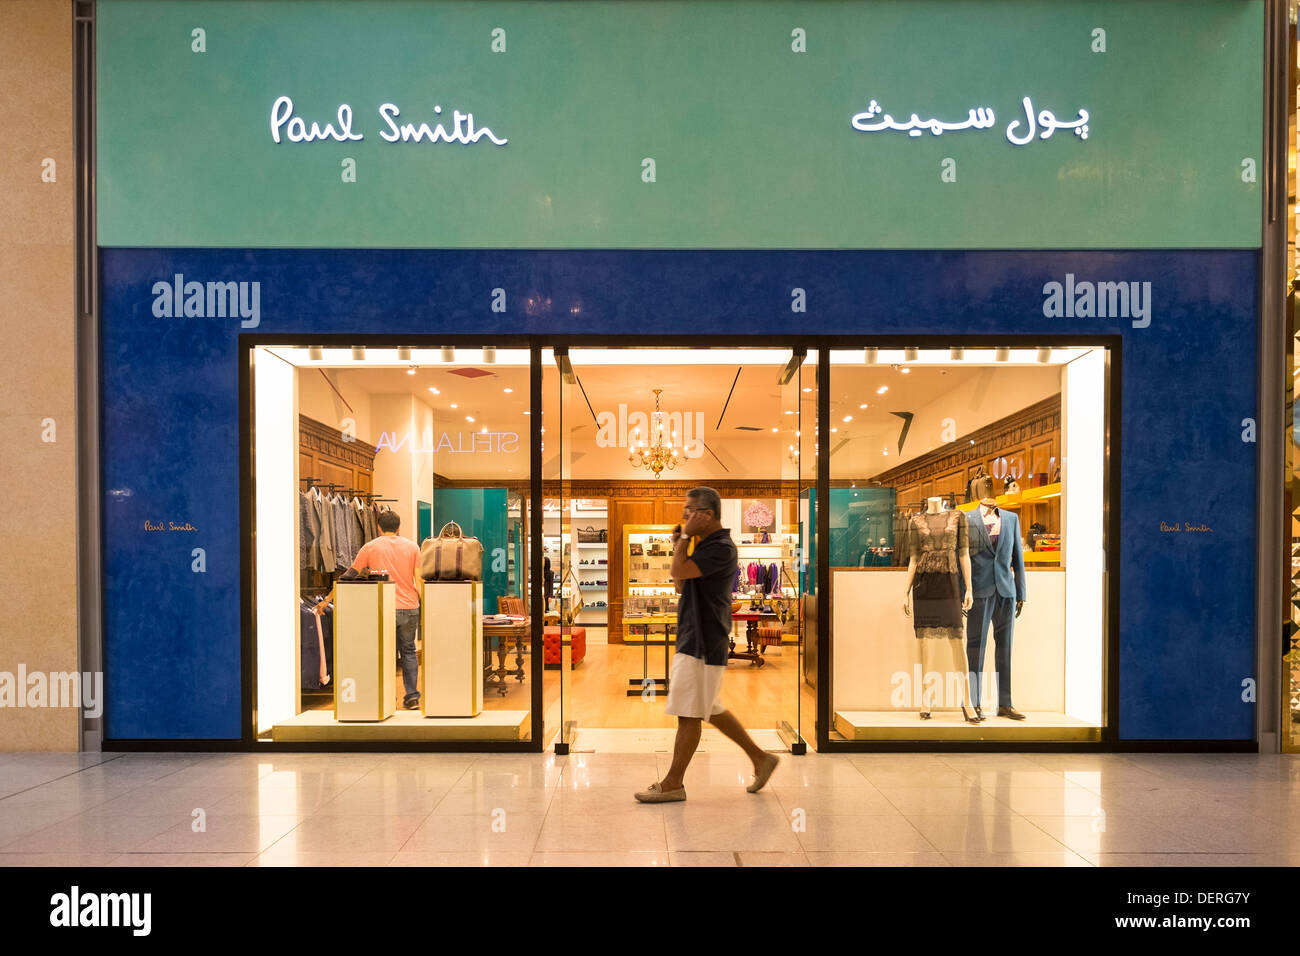 Paul Smith fashion boutique at Dubai Mall in Dubai United Arab emirates  Stock Photo - Alamy